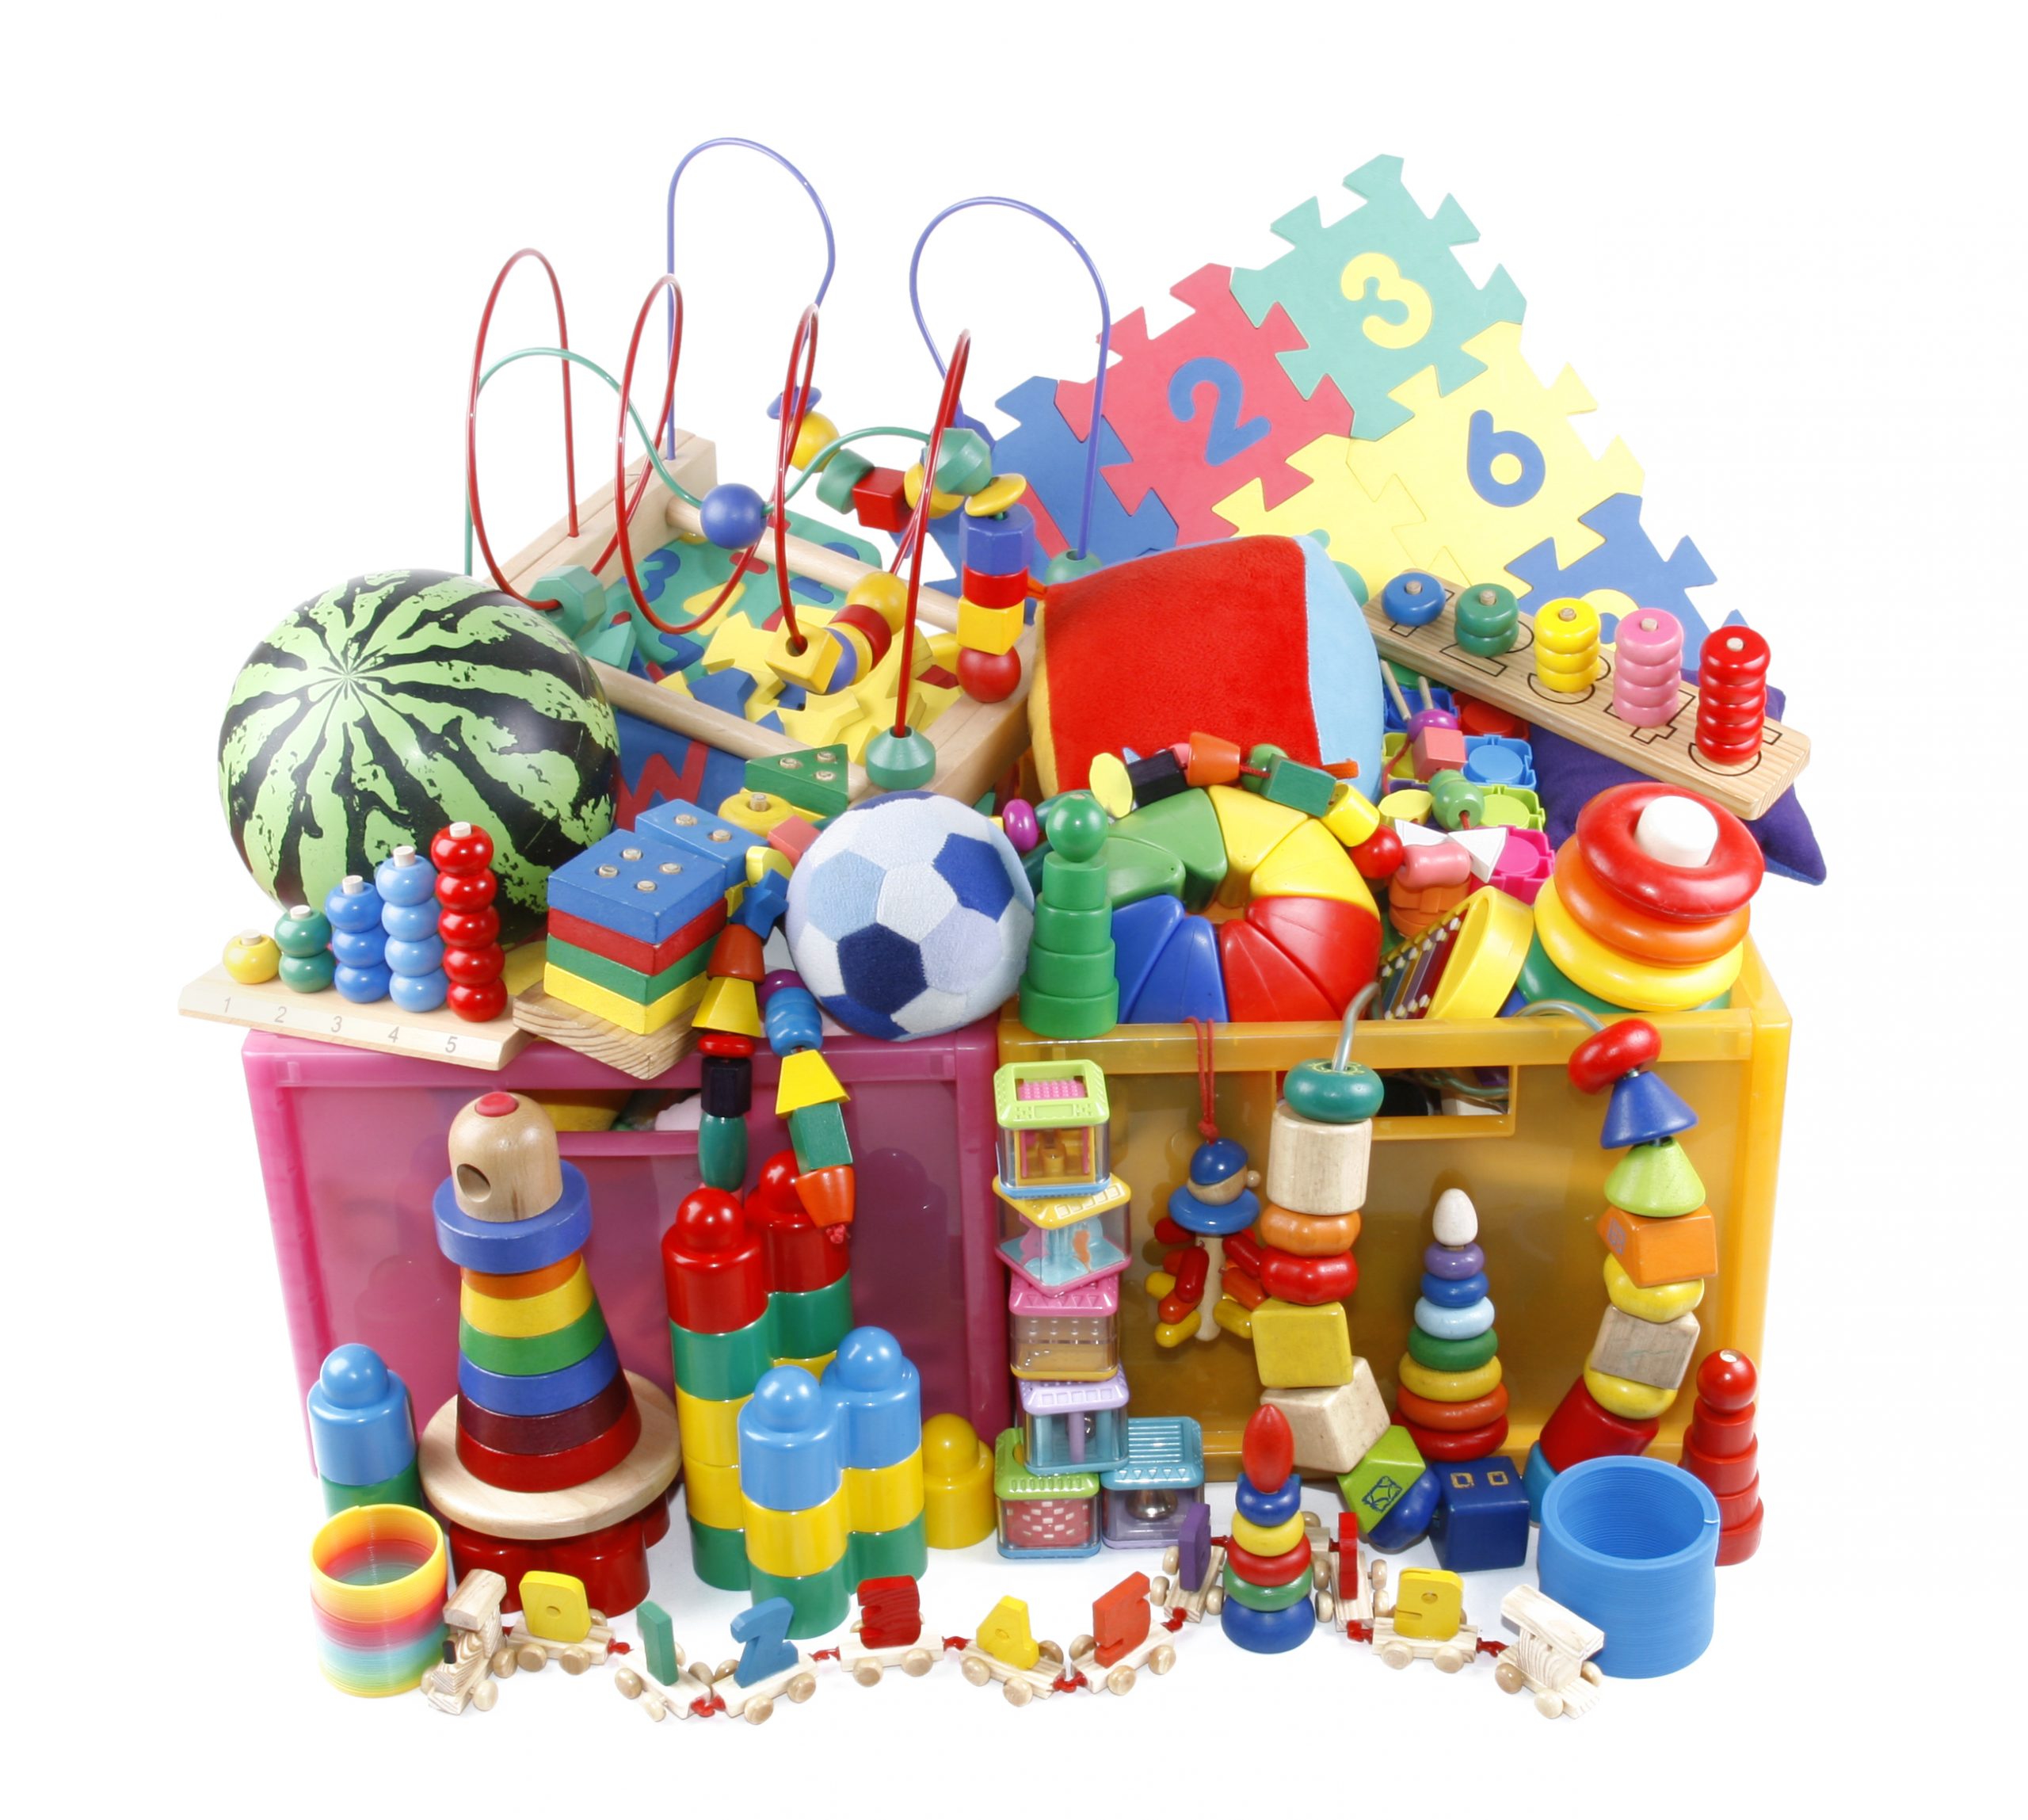 Игрушки купить рядом. Детские игрушки. Много игрушек для детей. Детский игрушки. Разные детские игрушки.